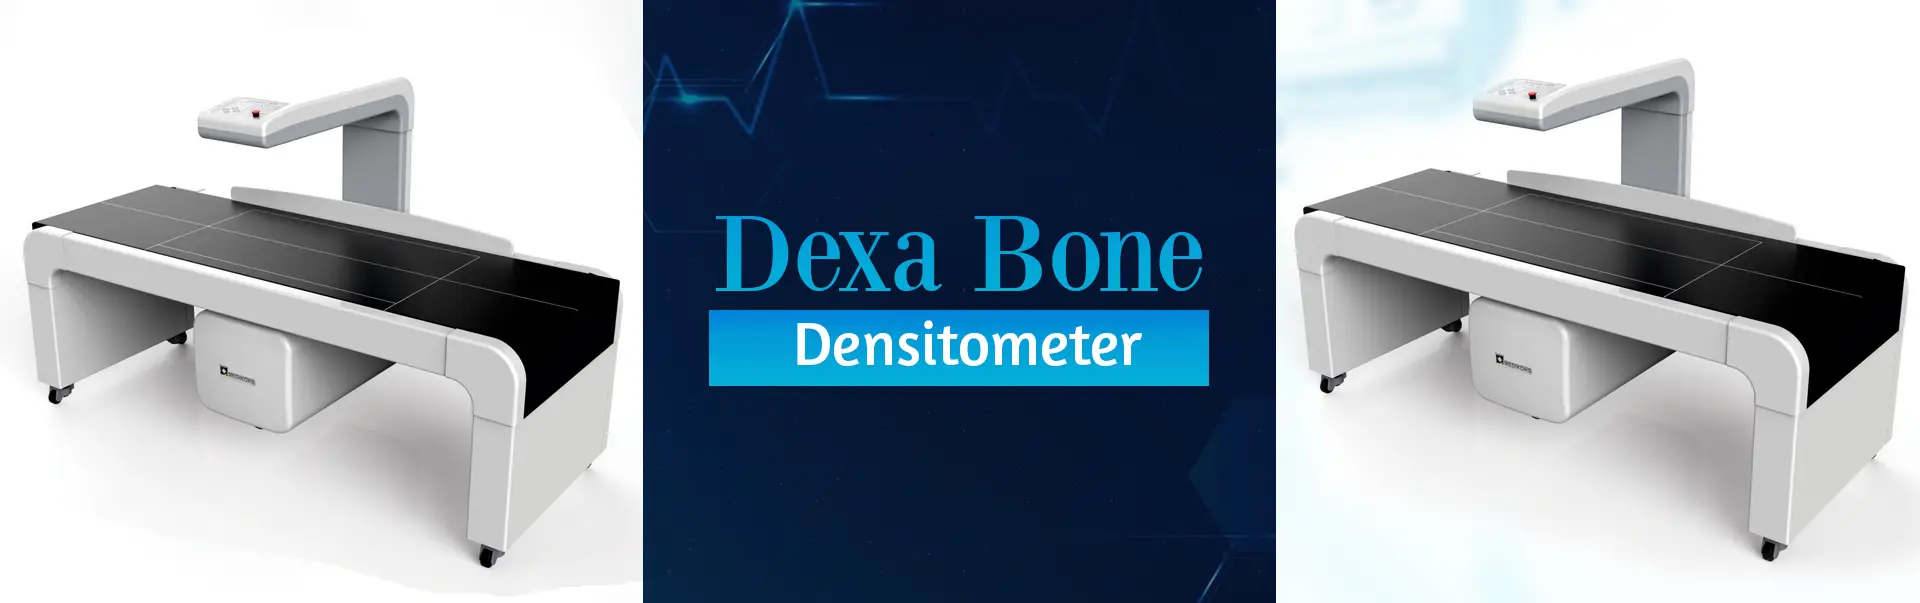 Dexa Bone Densitometer Manufacturers in Raipur